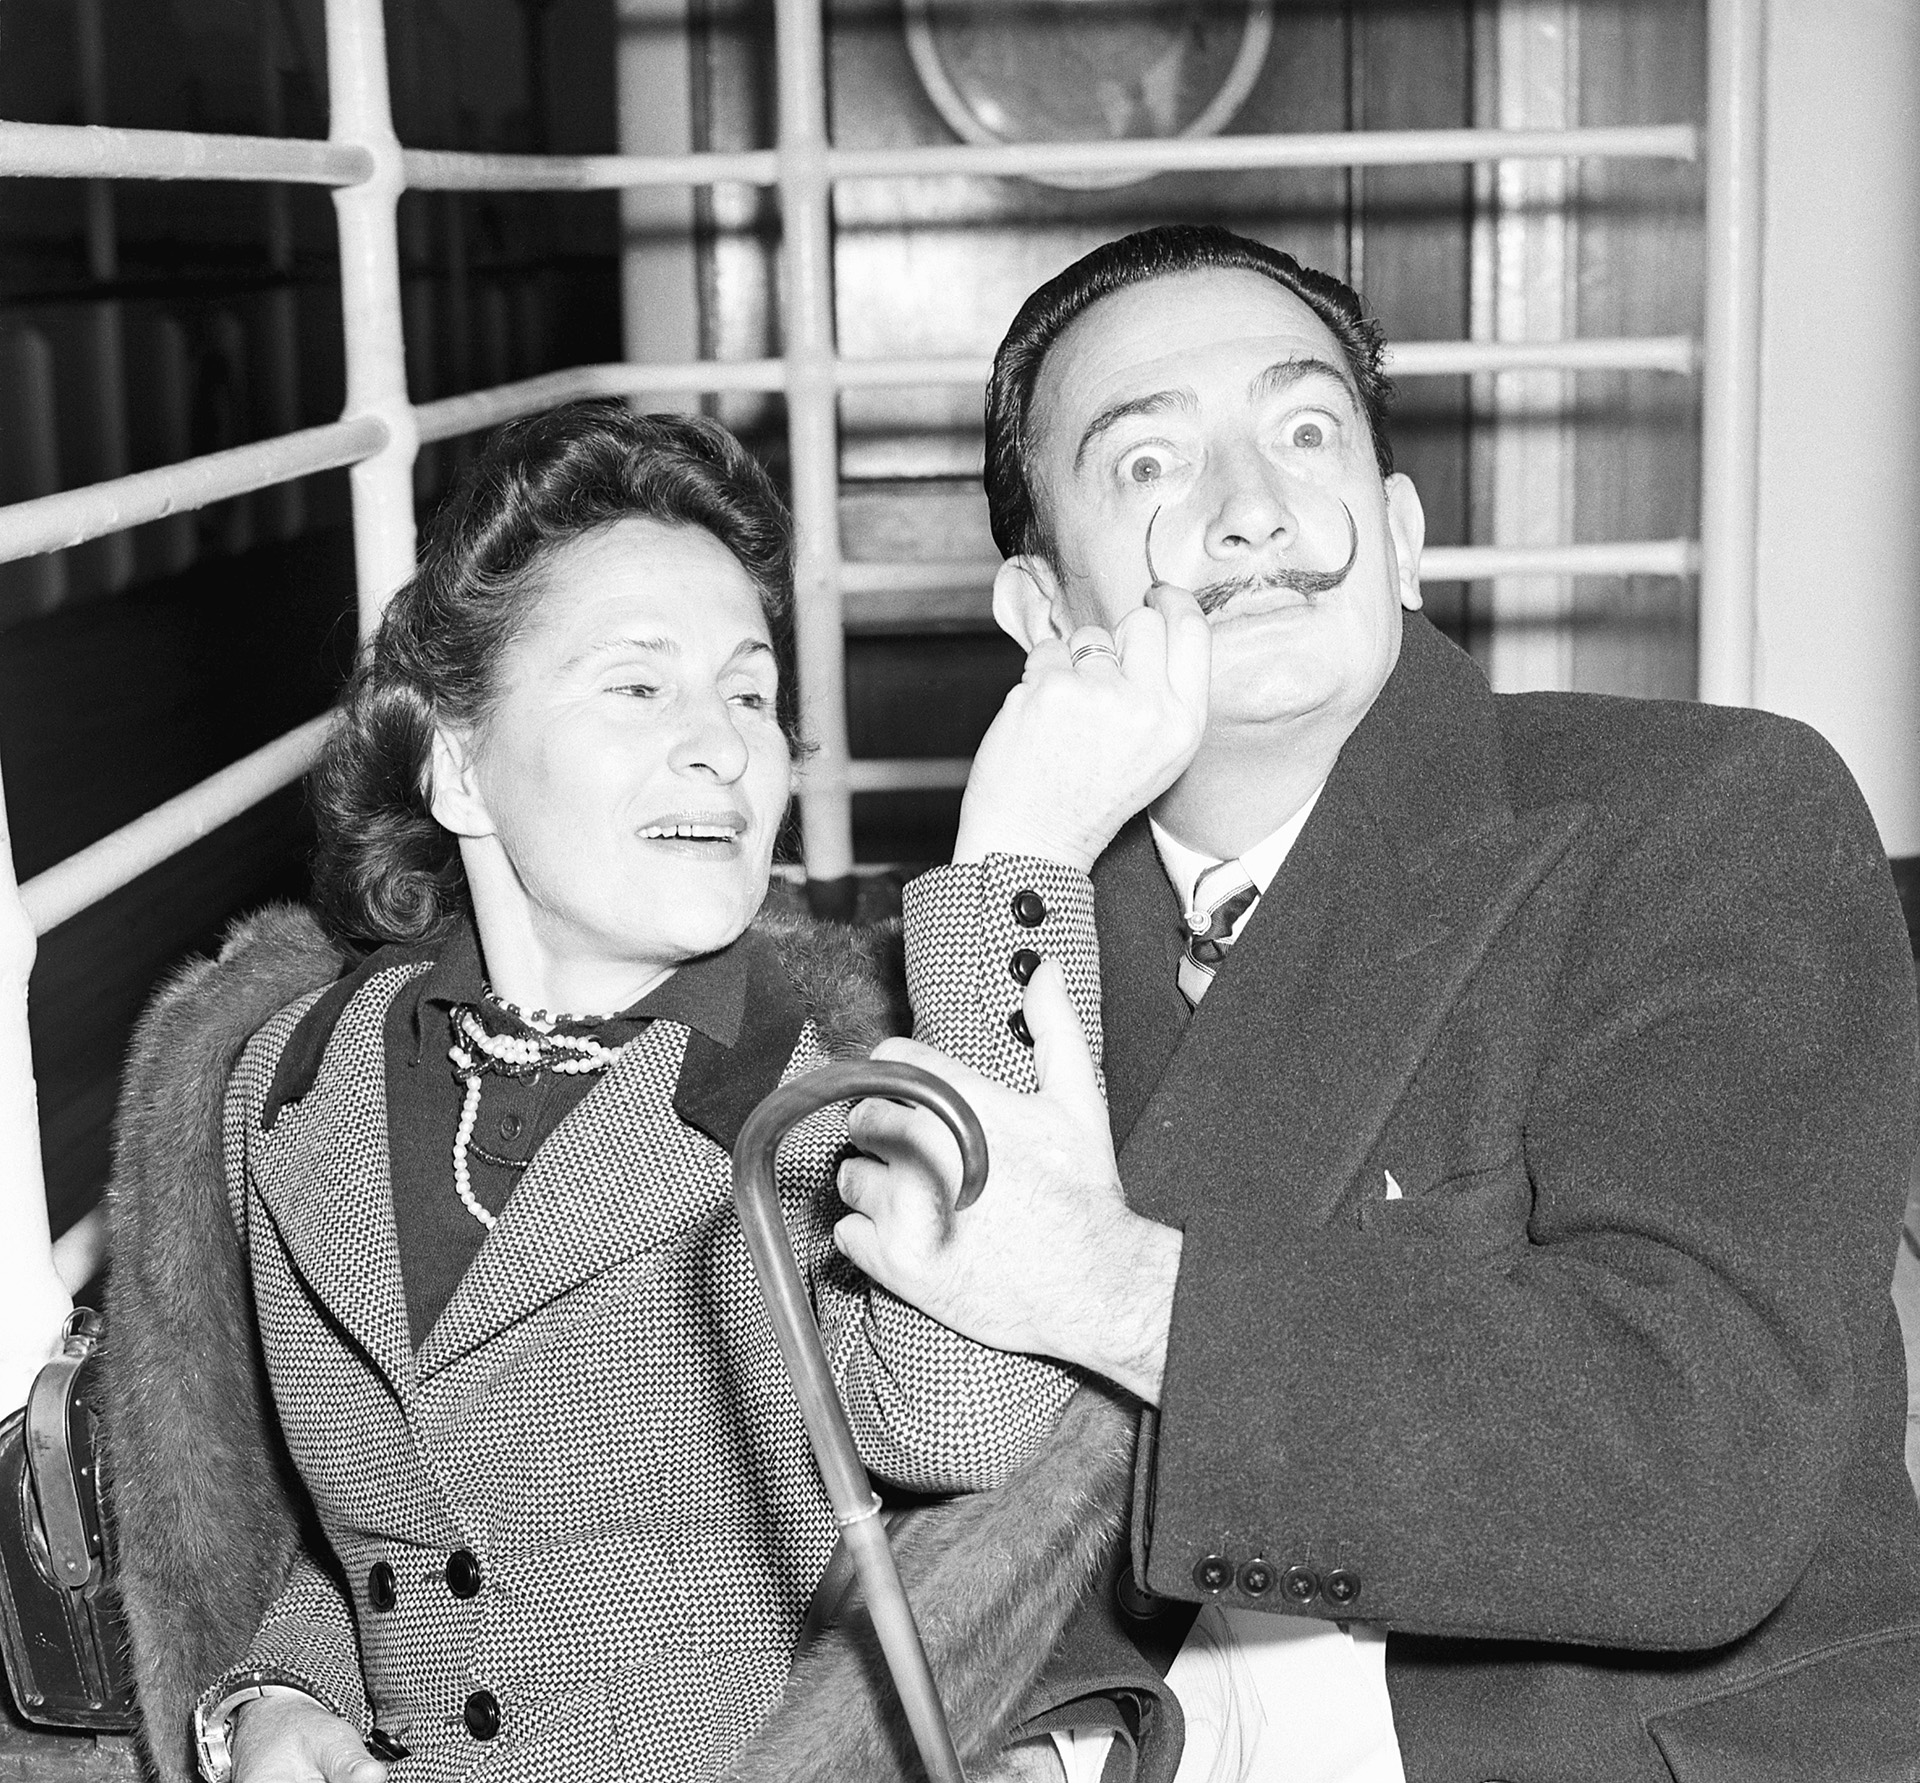 ¿Quién fue Gala entonces en la vida de Dalí? “La mujer que le permitió ir por la vida como si fuera heterosexual”, dice Gibson. Alguien de quien “dependía como un niño y lo cuidaba a su vez como una madre”, dice la escritora Monika Zgustova (Bettmann/Getty)